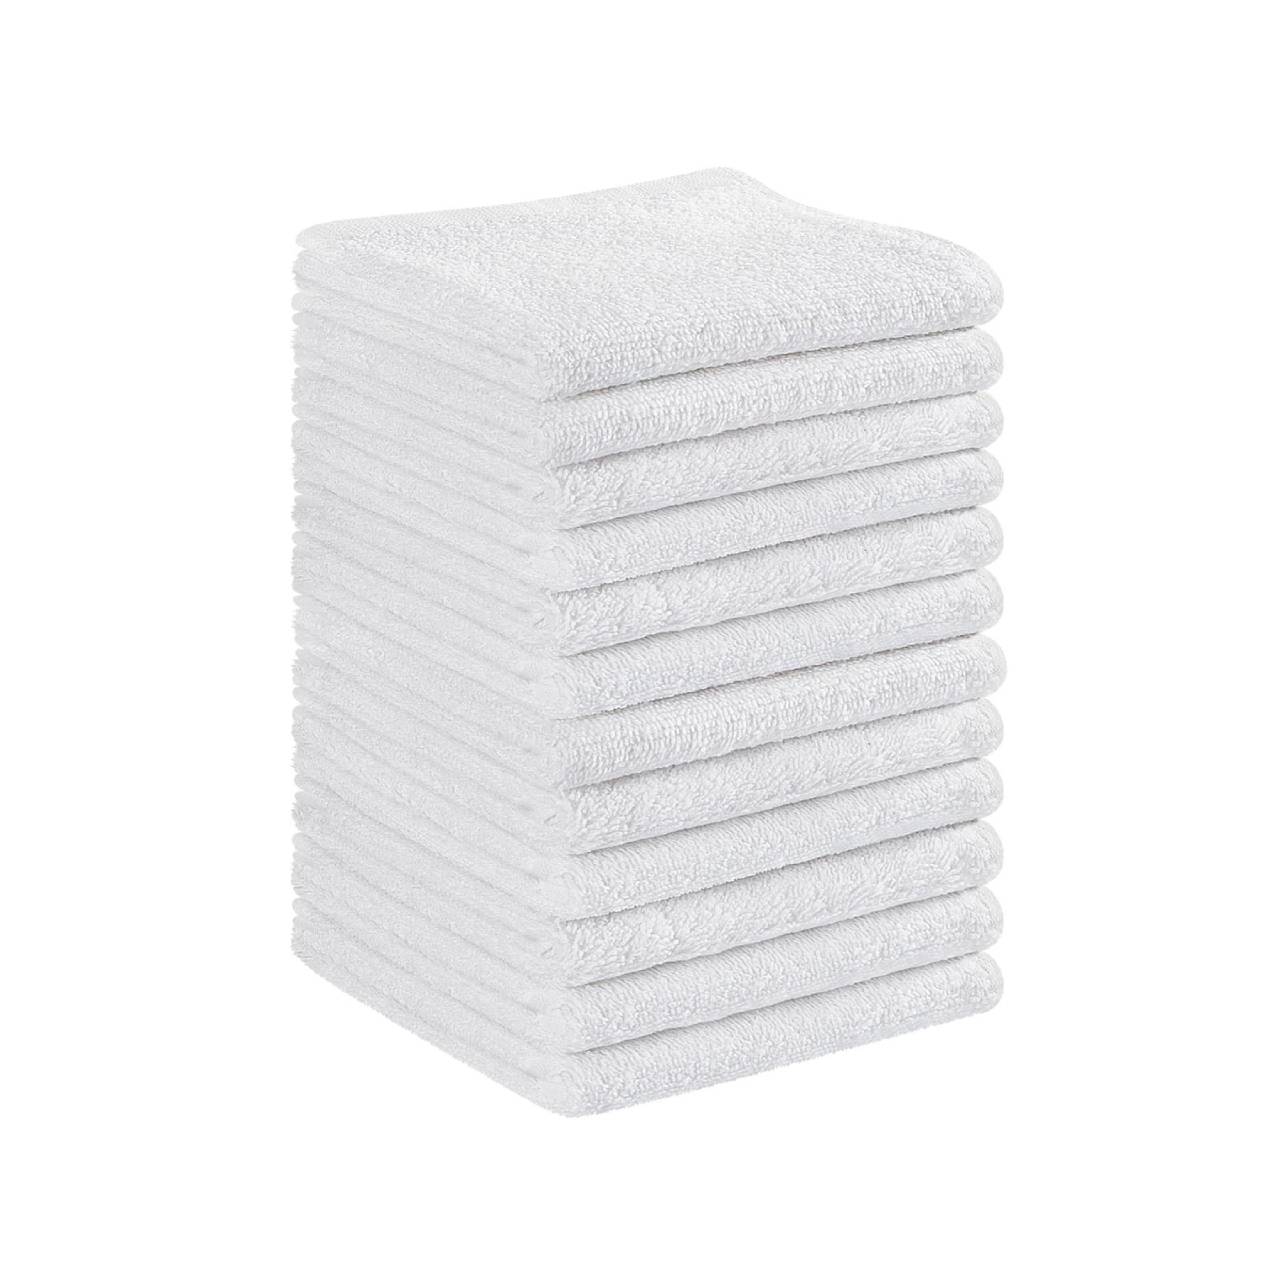 100% Cotton Soft  Face Towels Set,